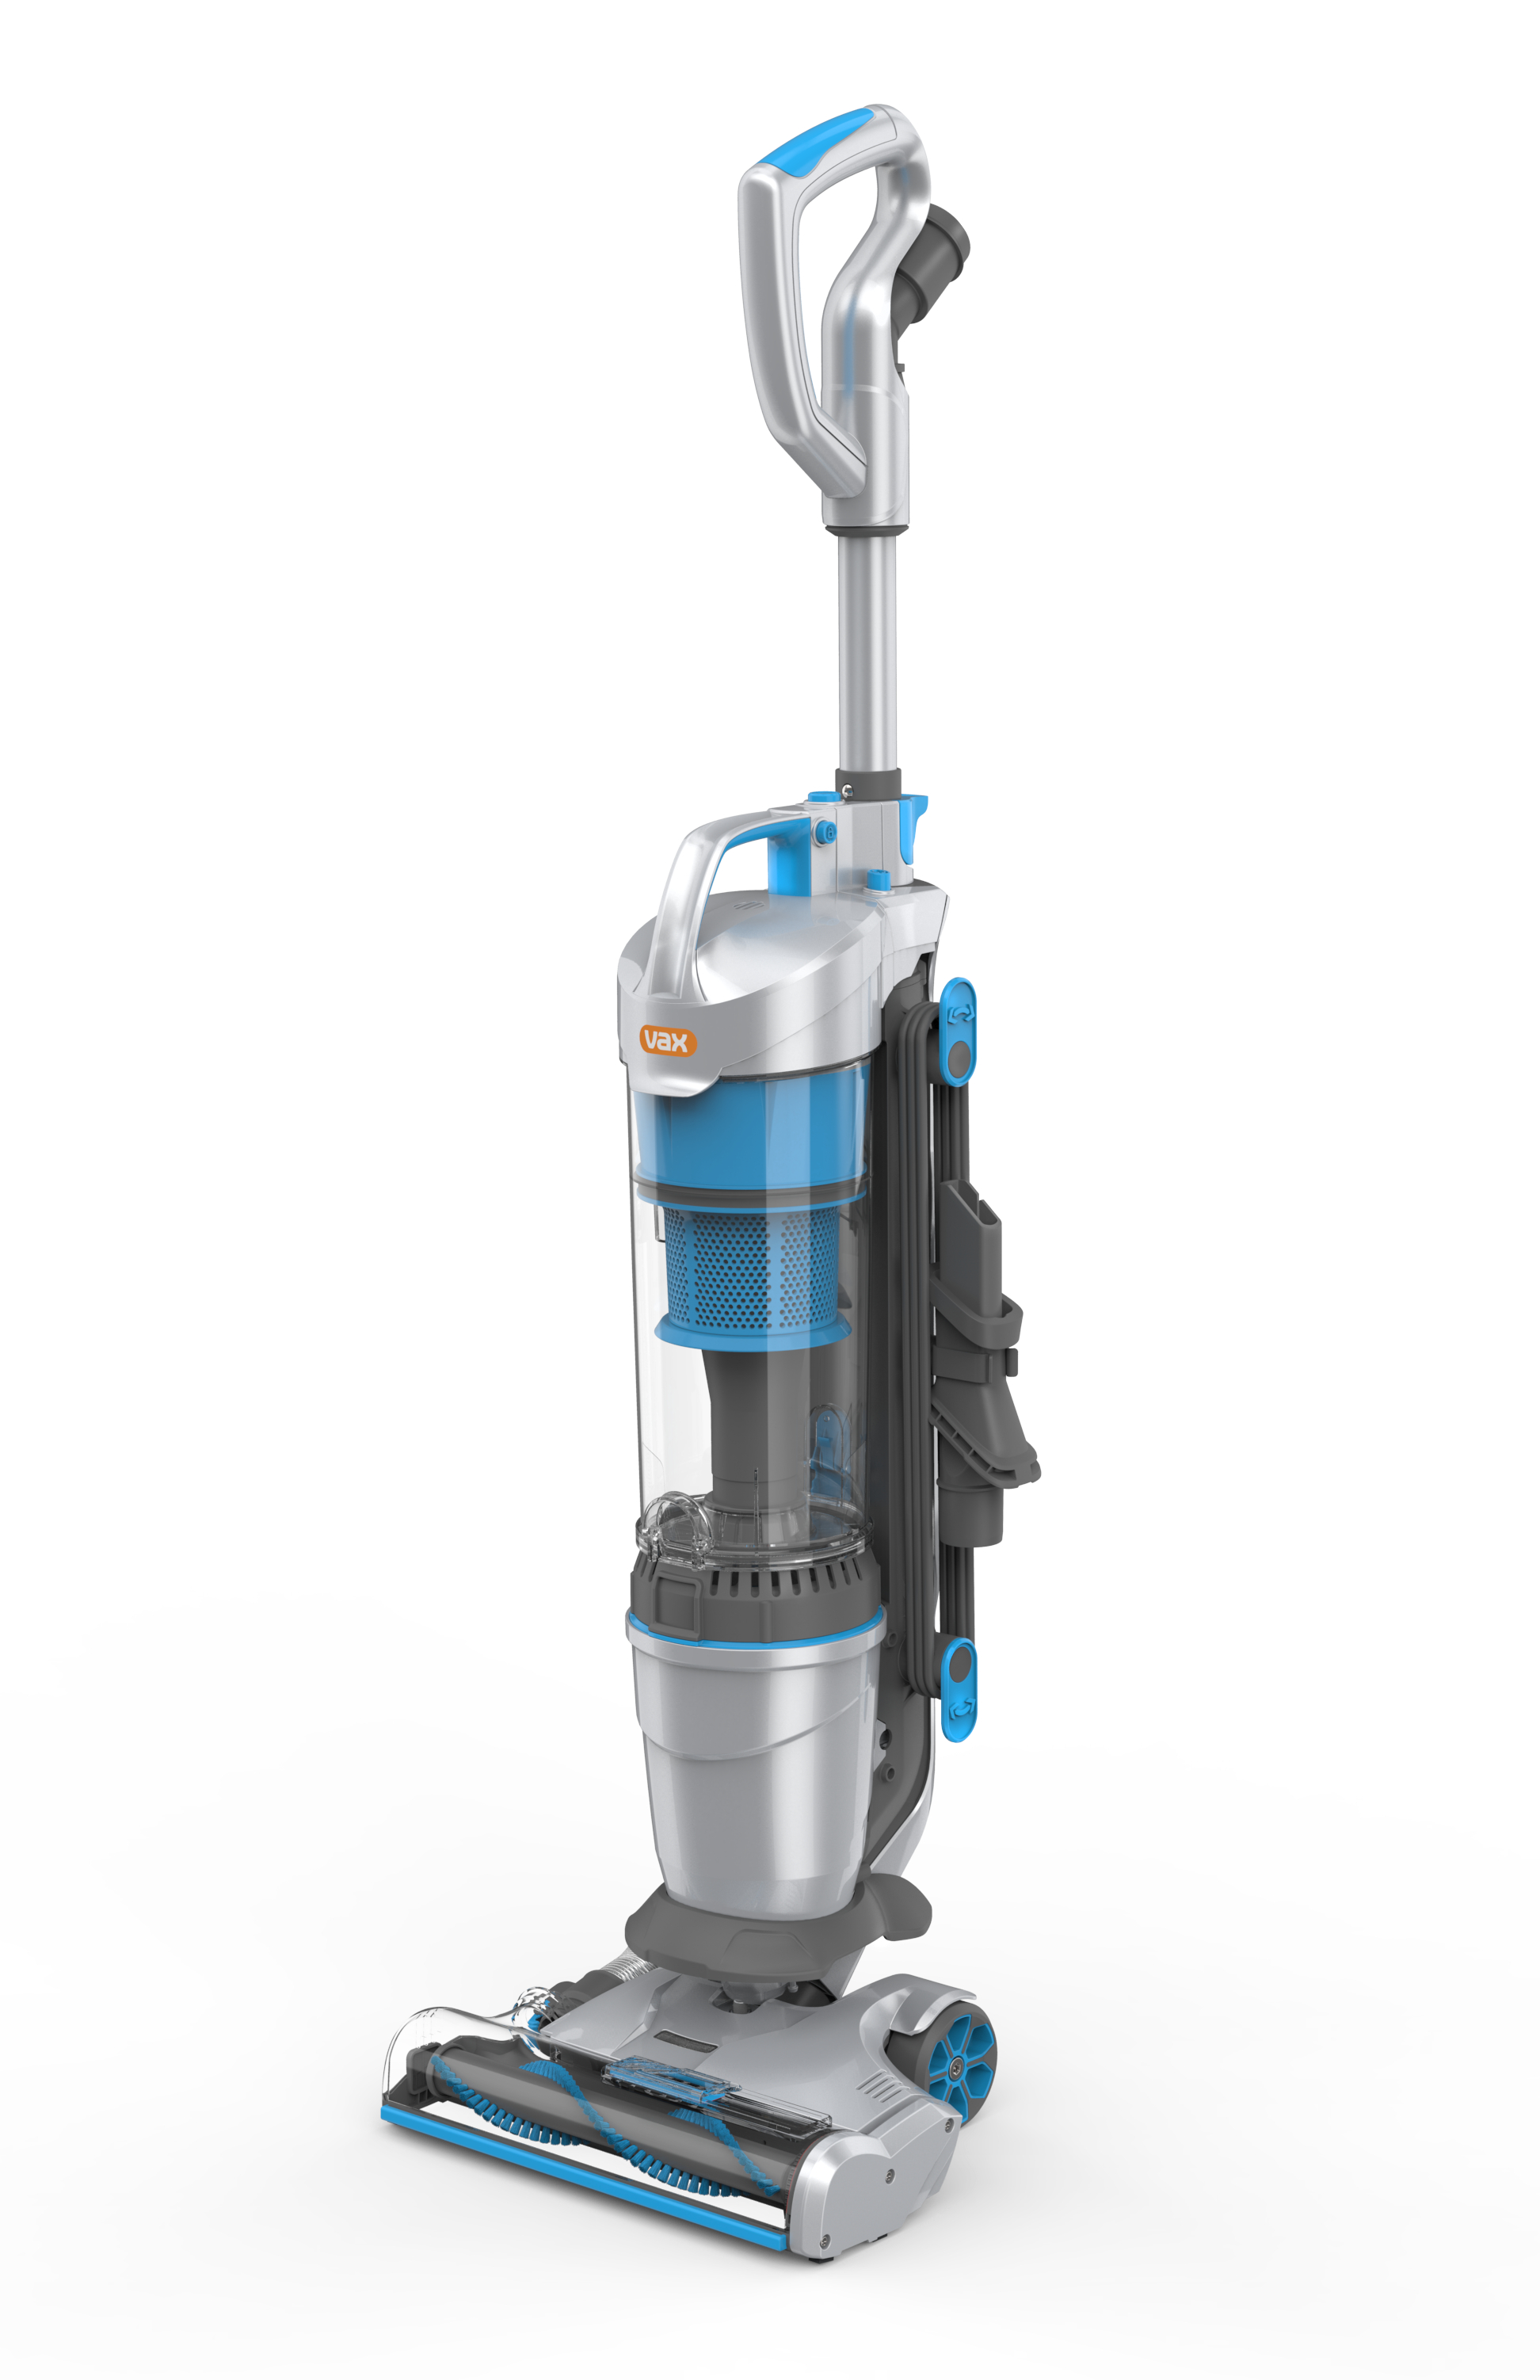 Vax airTM lift vacuum cleaner